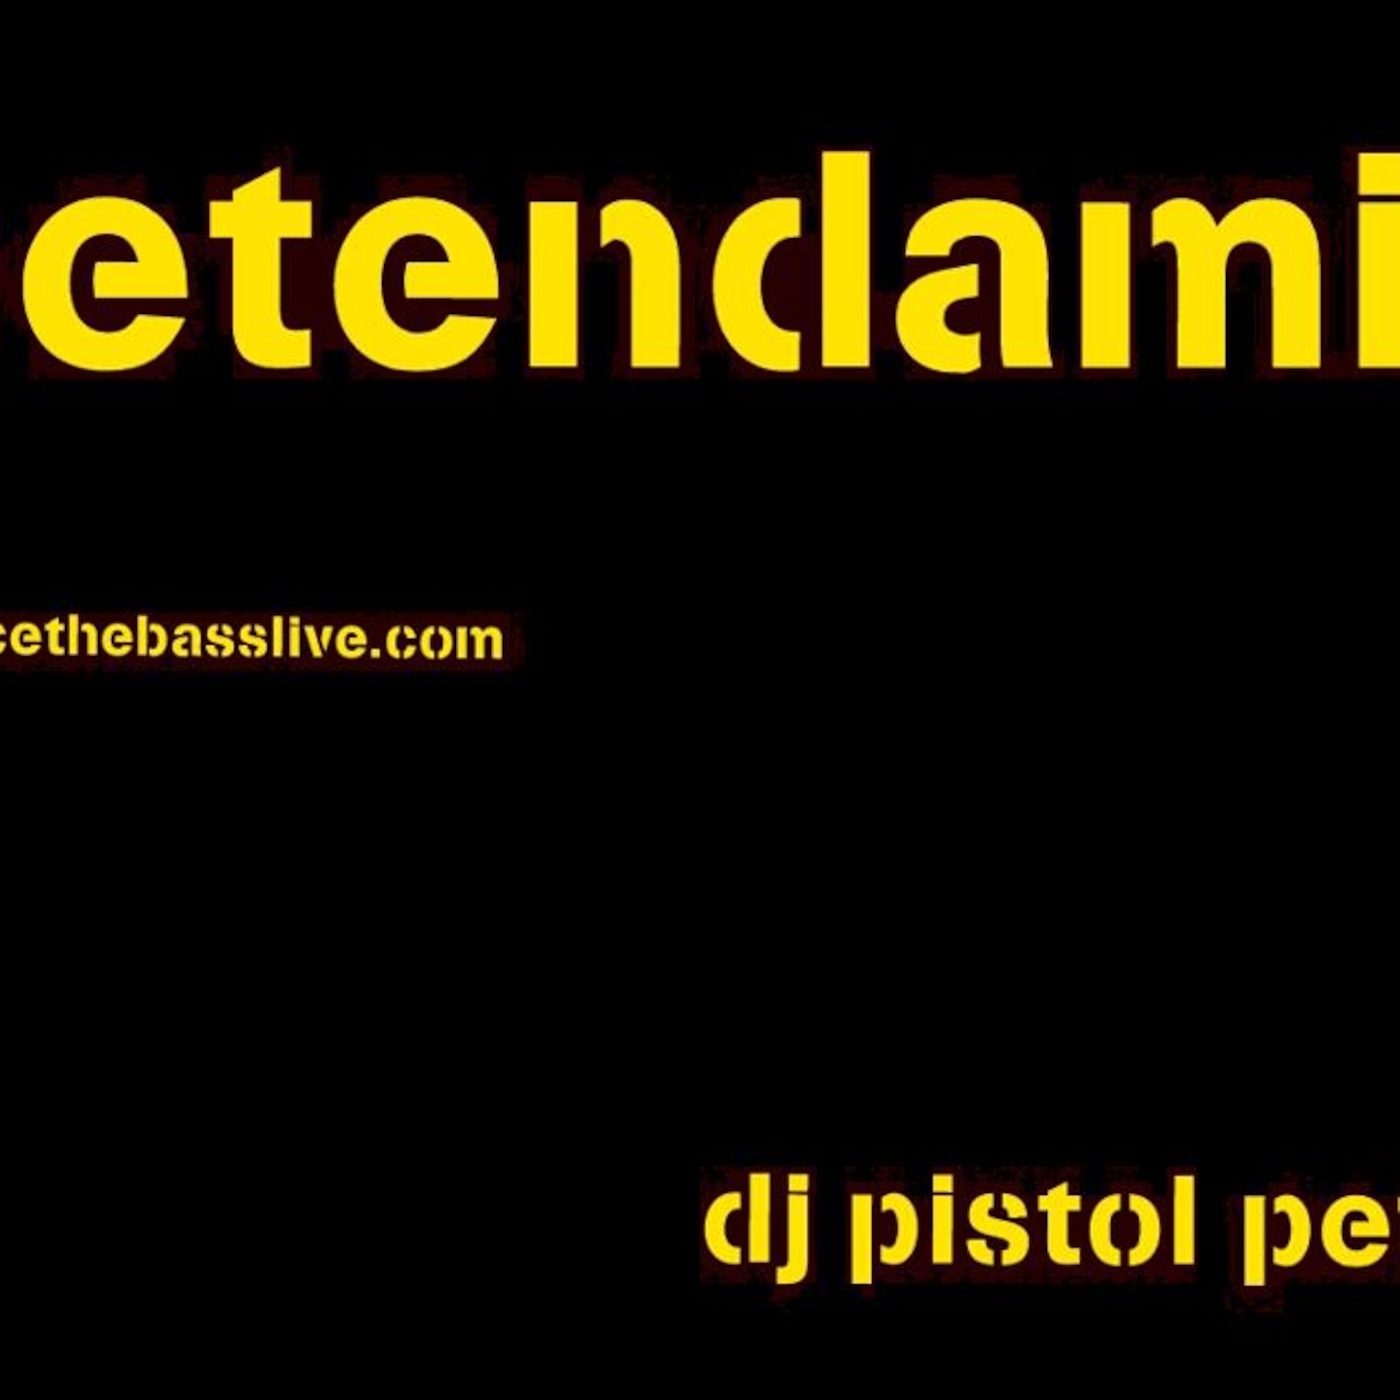 Dj Pistol Pete's Podcast